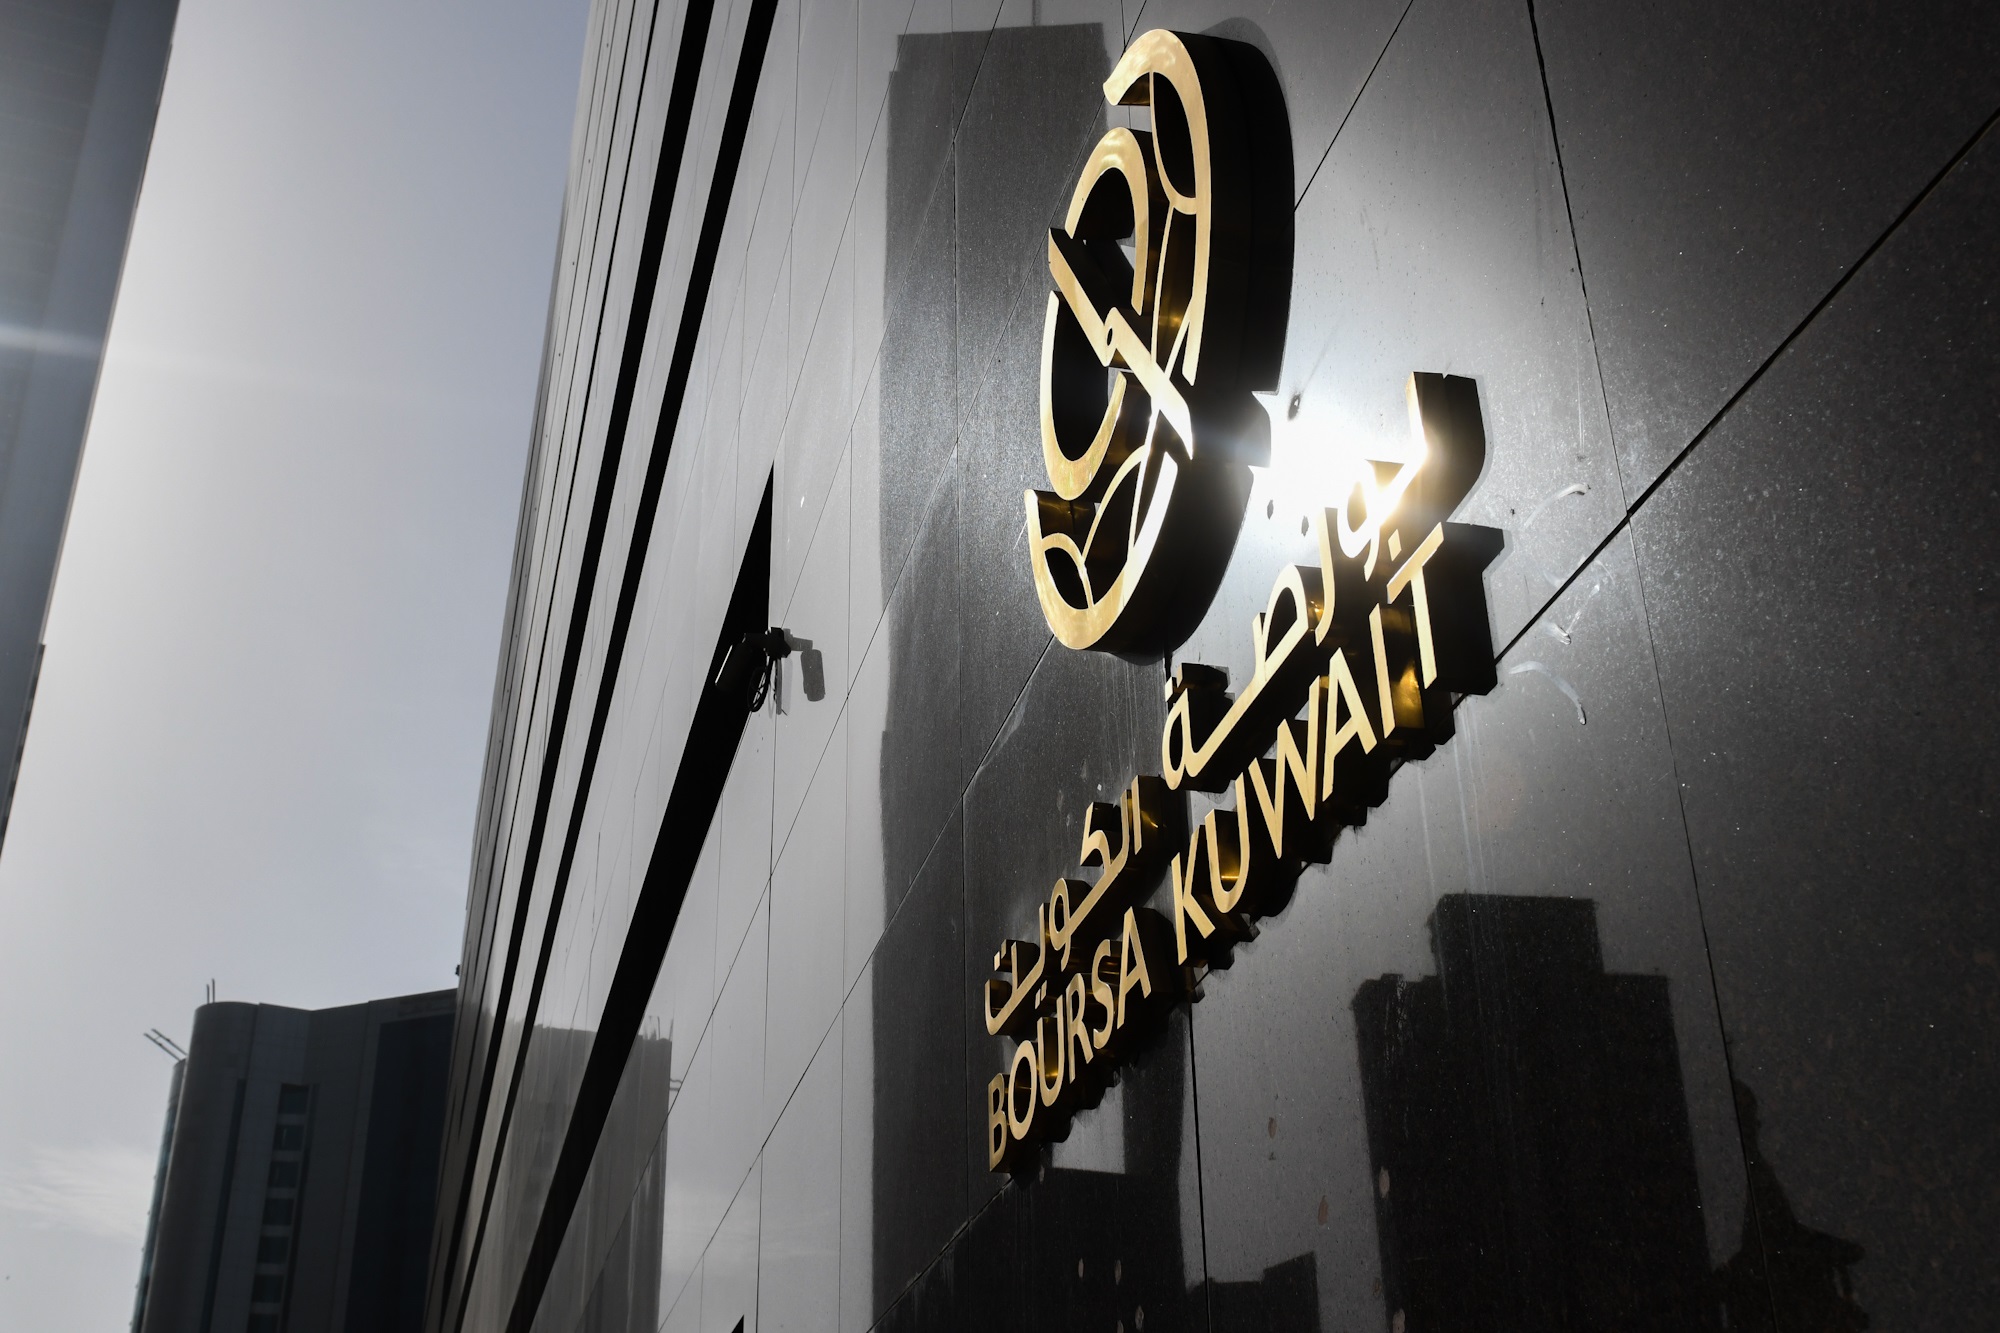 بورصة الكويت تغلق تعاملاتها على ارتفاع مؤشرها العام 24 نقطة ليبلغ 66ر7548 بنسبة 32ر0 في المئة                                                                                                                                                             